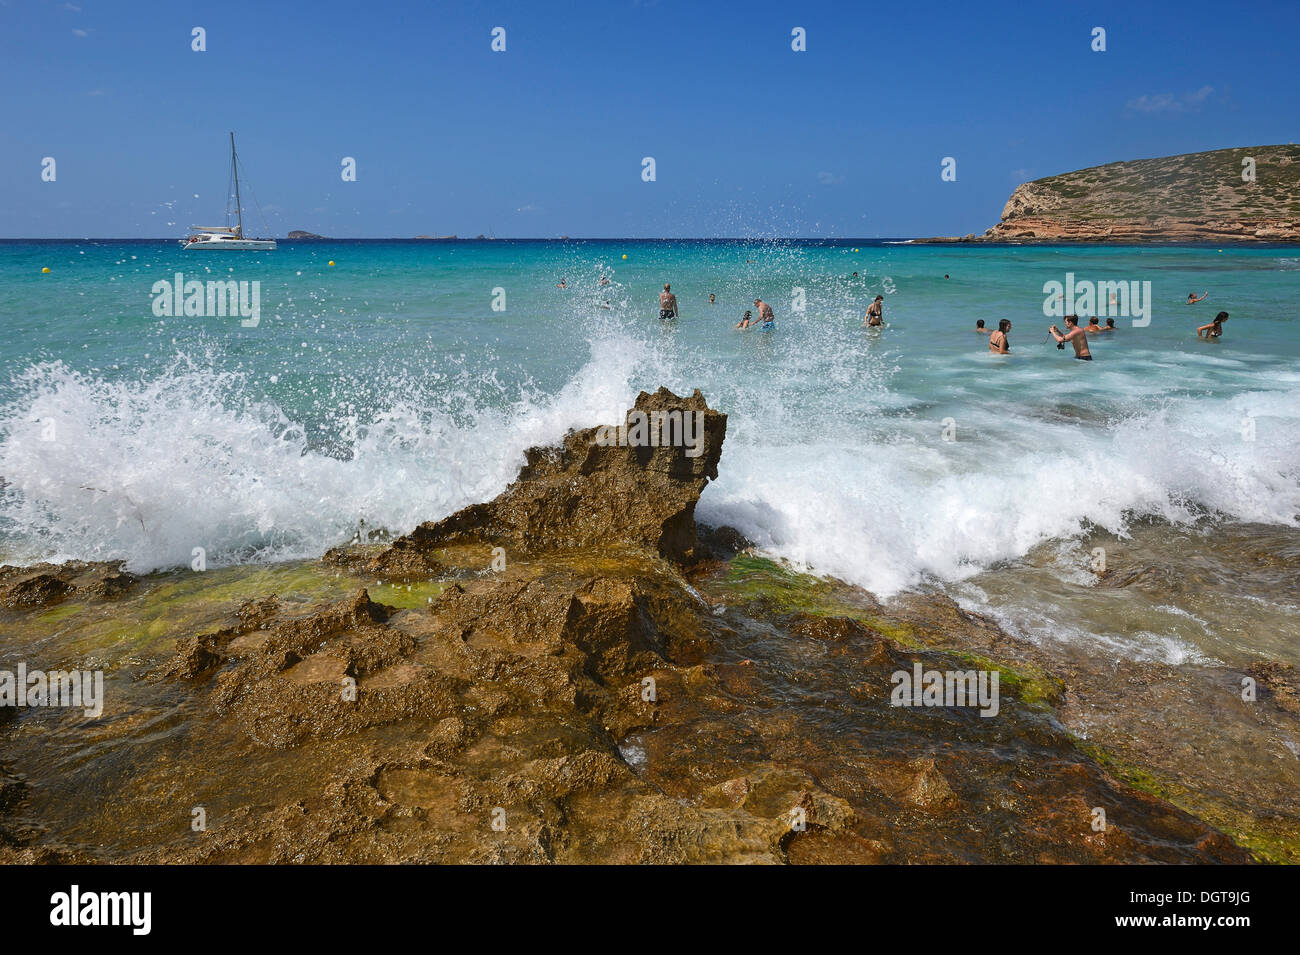 Touristen im Wasser, Cala Comte, Platges de Comte, Ibiza, wurden Inseln oder Inseln, Balearen, Spanien, Europa Stockfoto